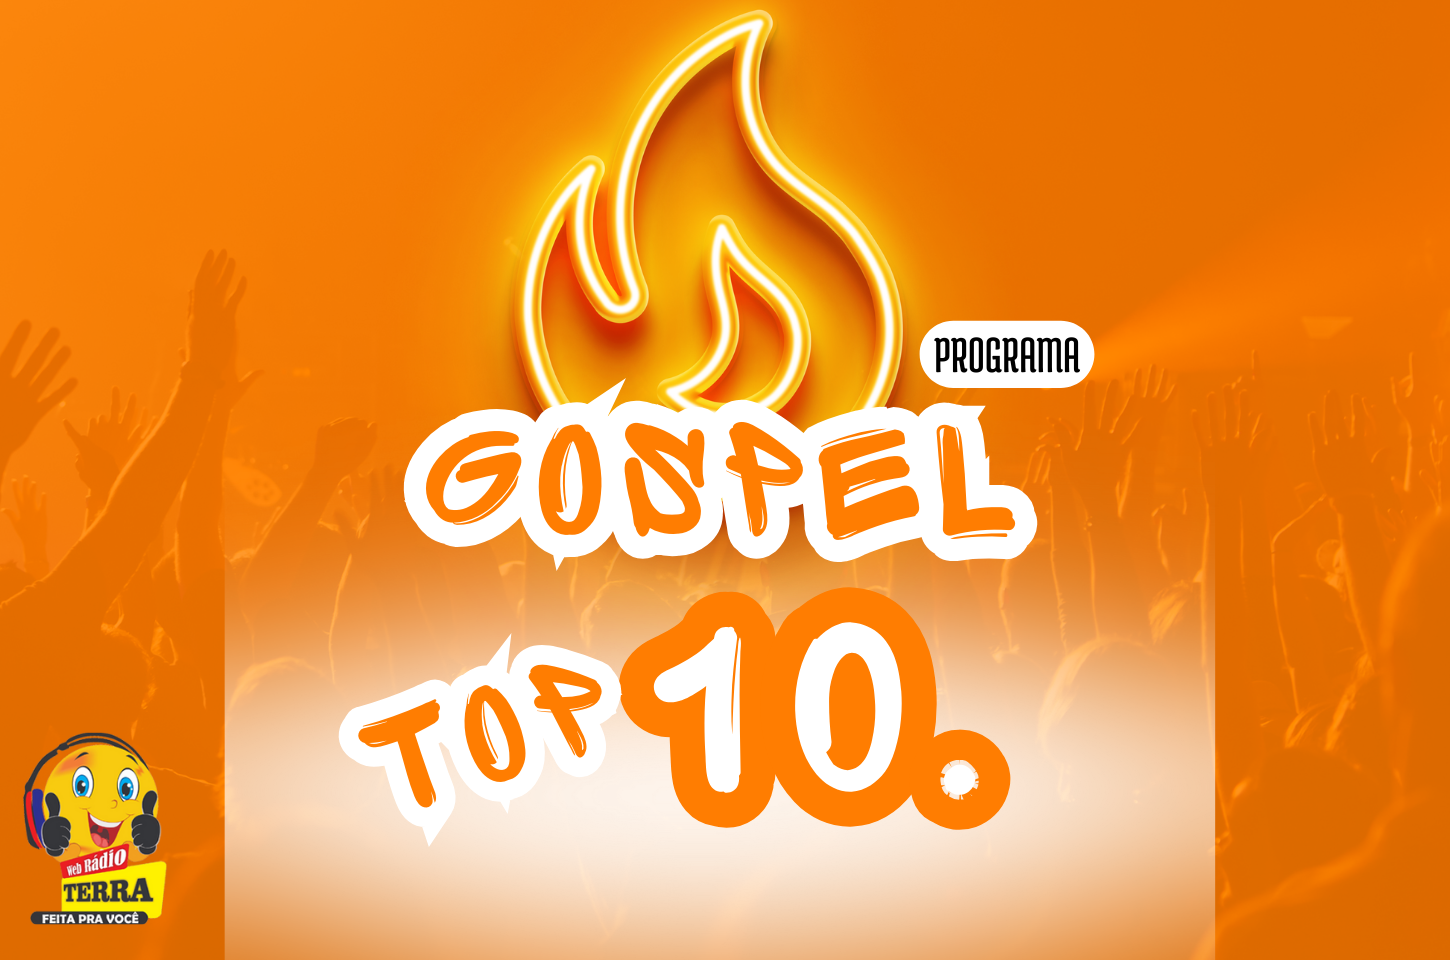 GOSPEL TOP 10